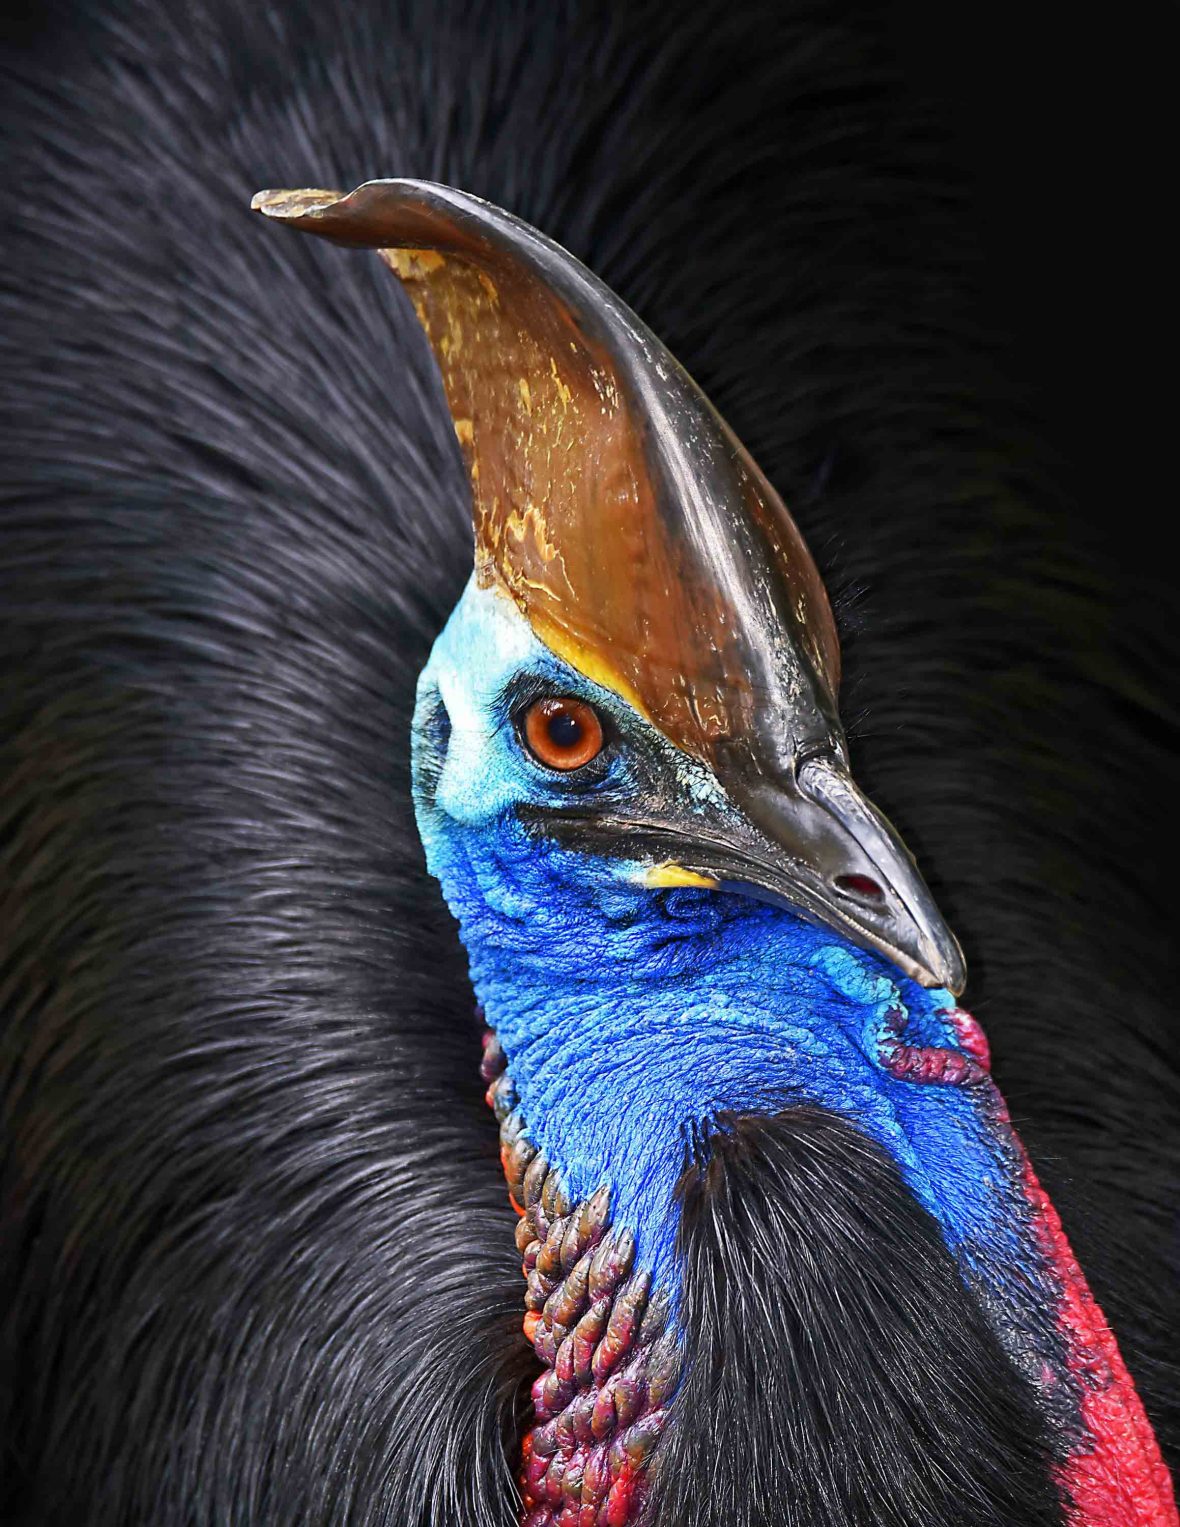 A close up of a cassowary bird